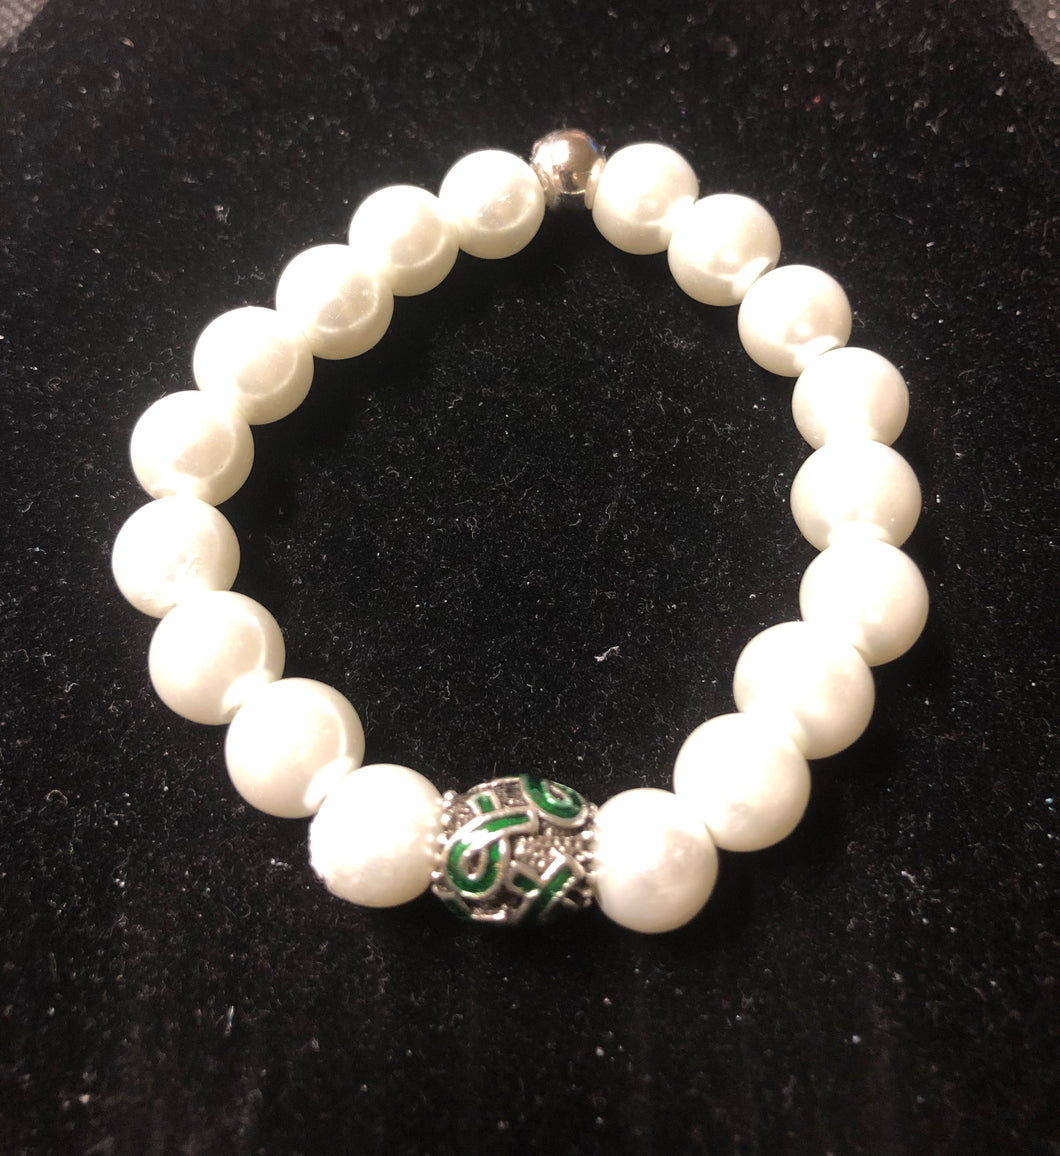 Green/White Awareness Beaded Bracelet